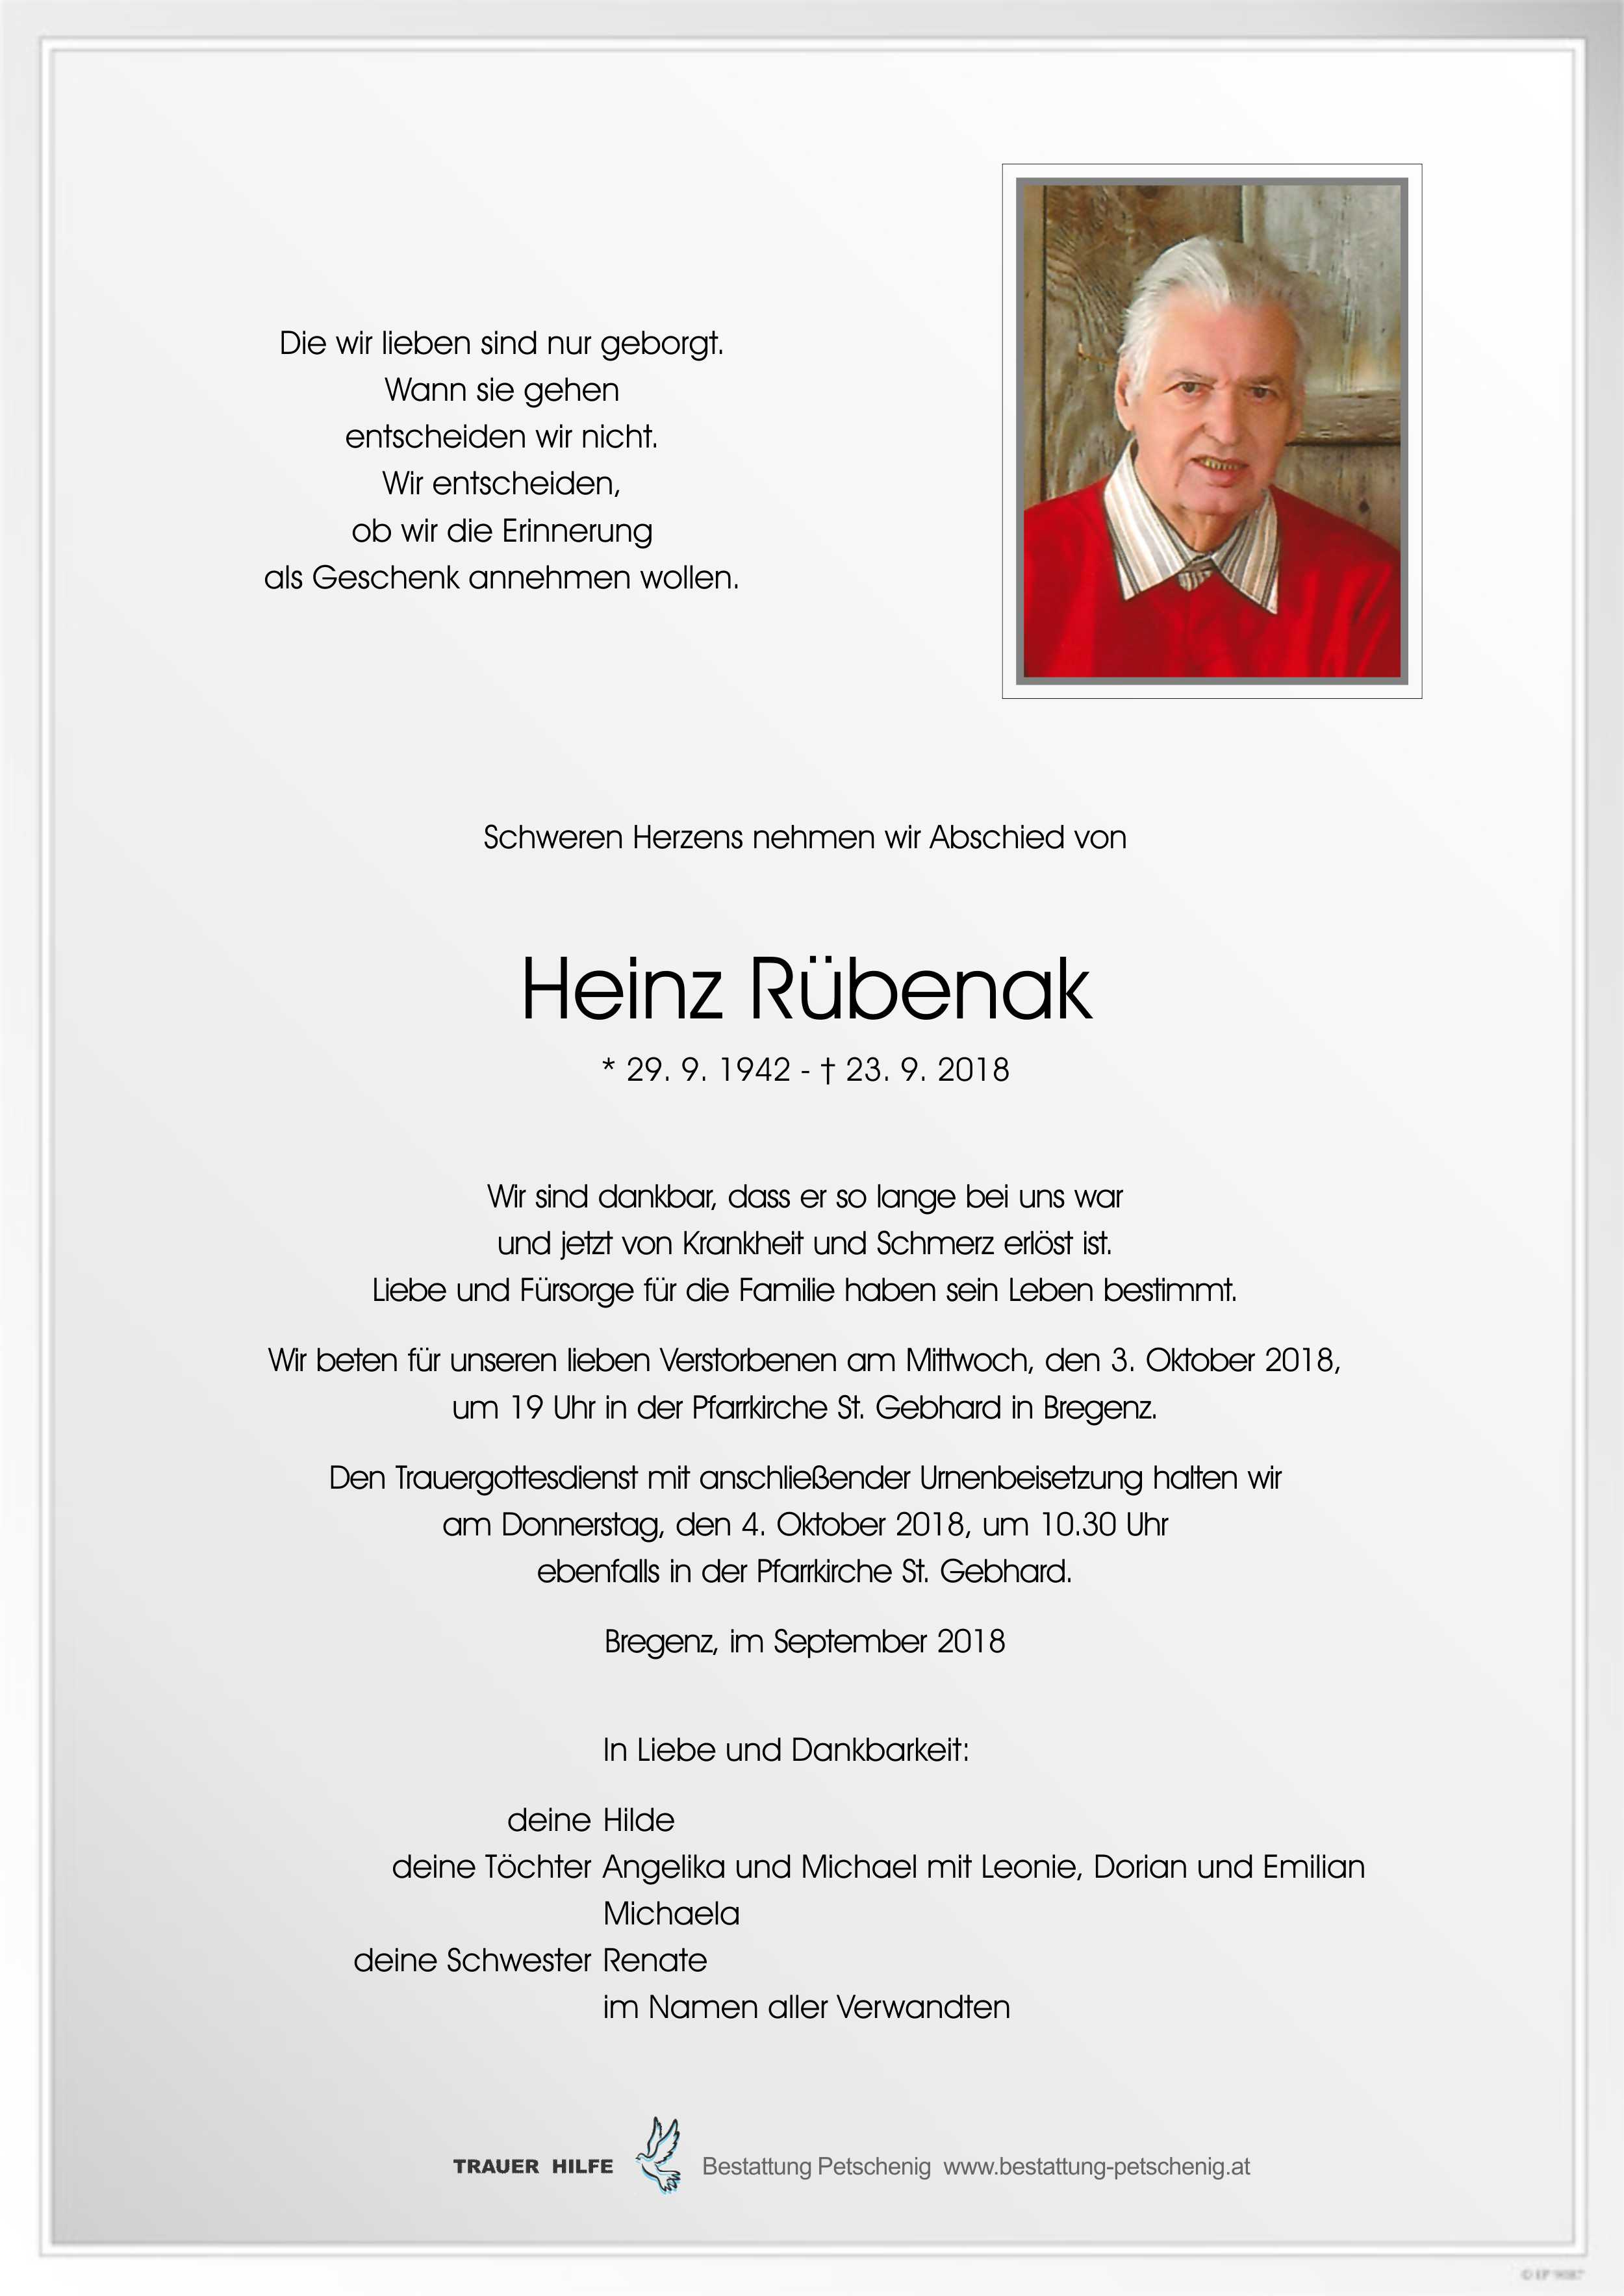 Heinz Rübenak